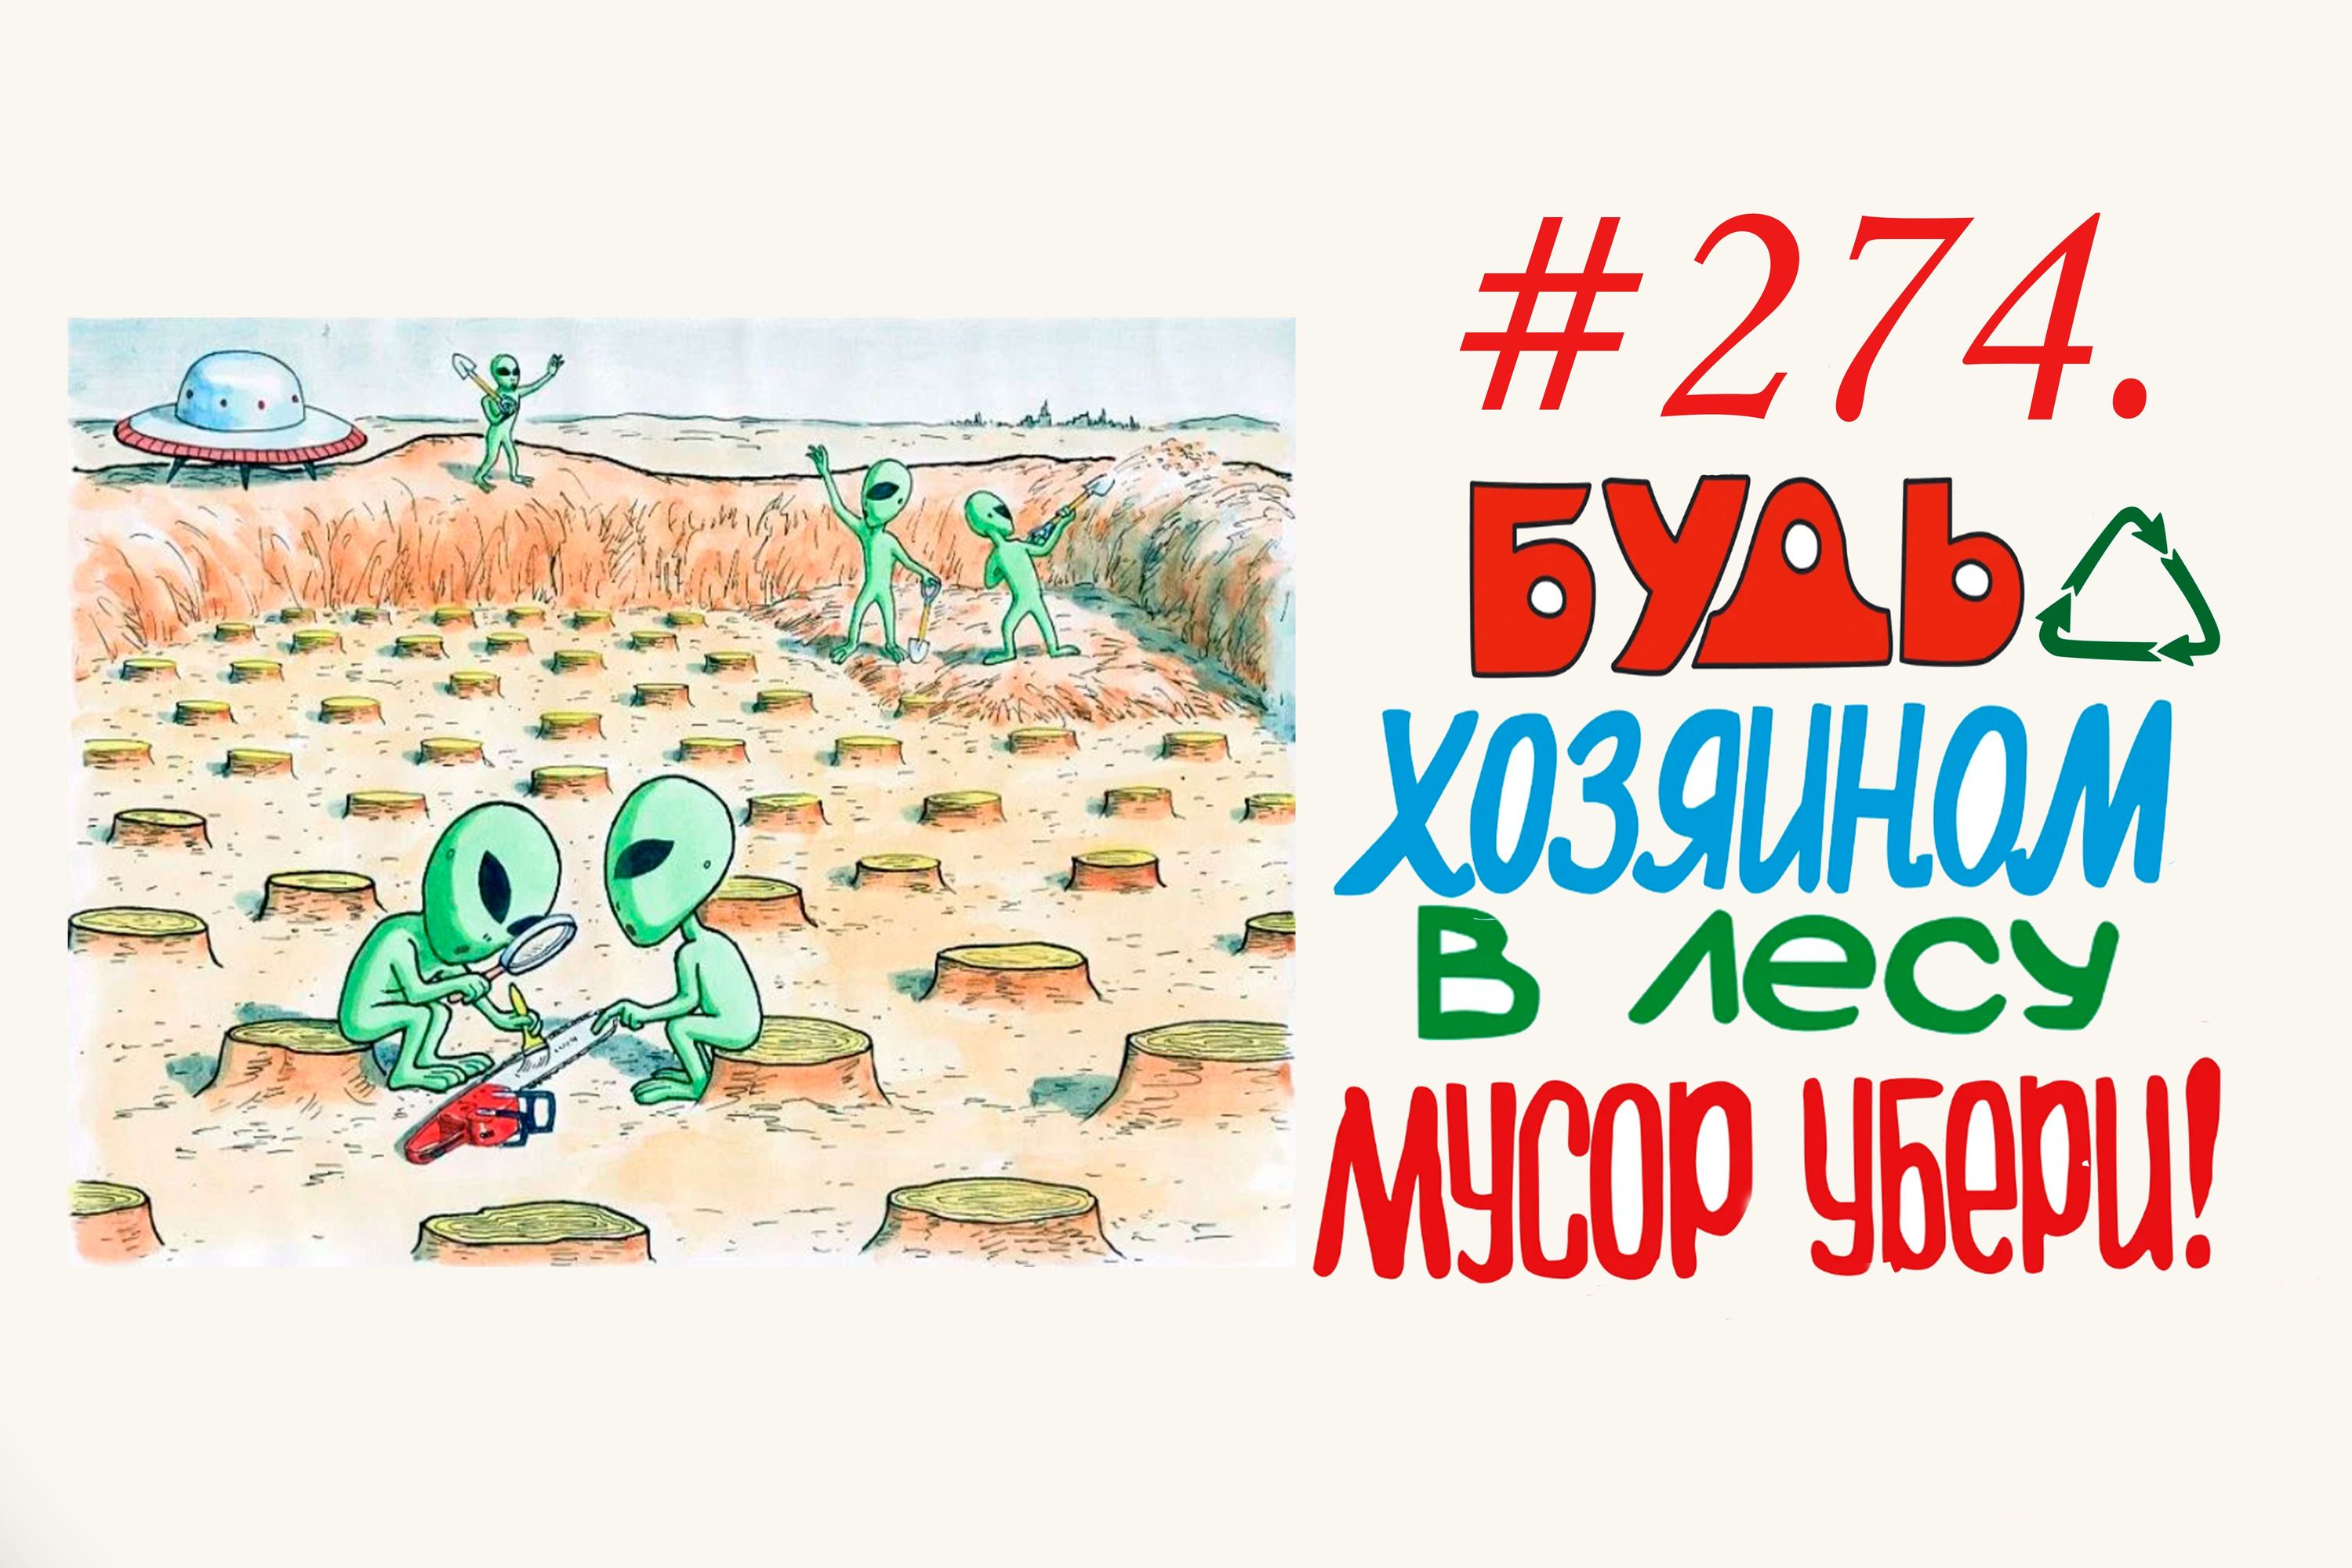 Экологический народный контроль в лесу ( 83 мешков мусора) #274 Орехово-Зуево